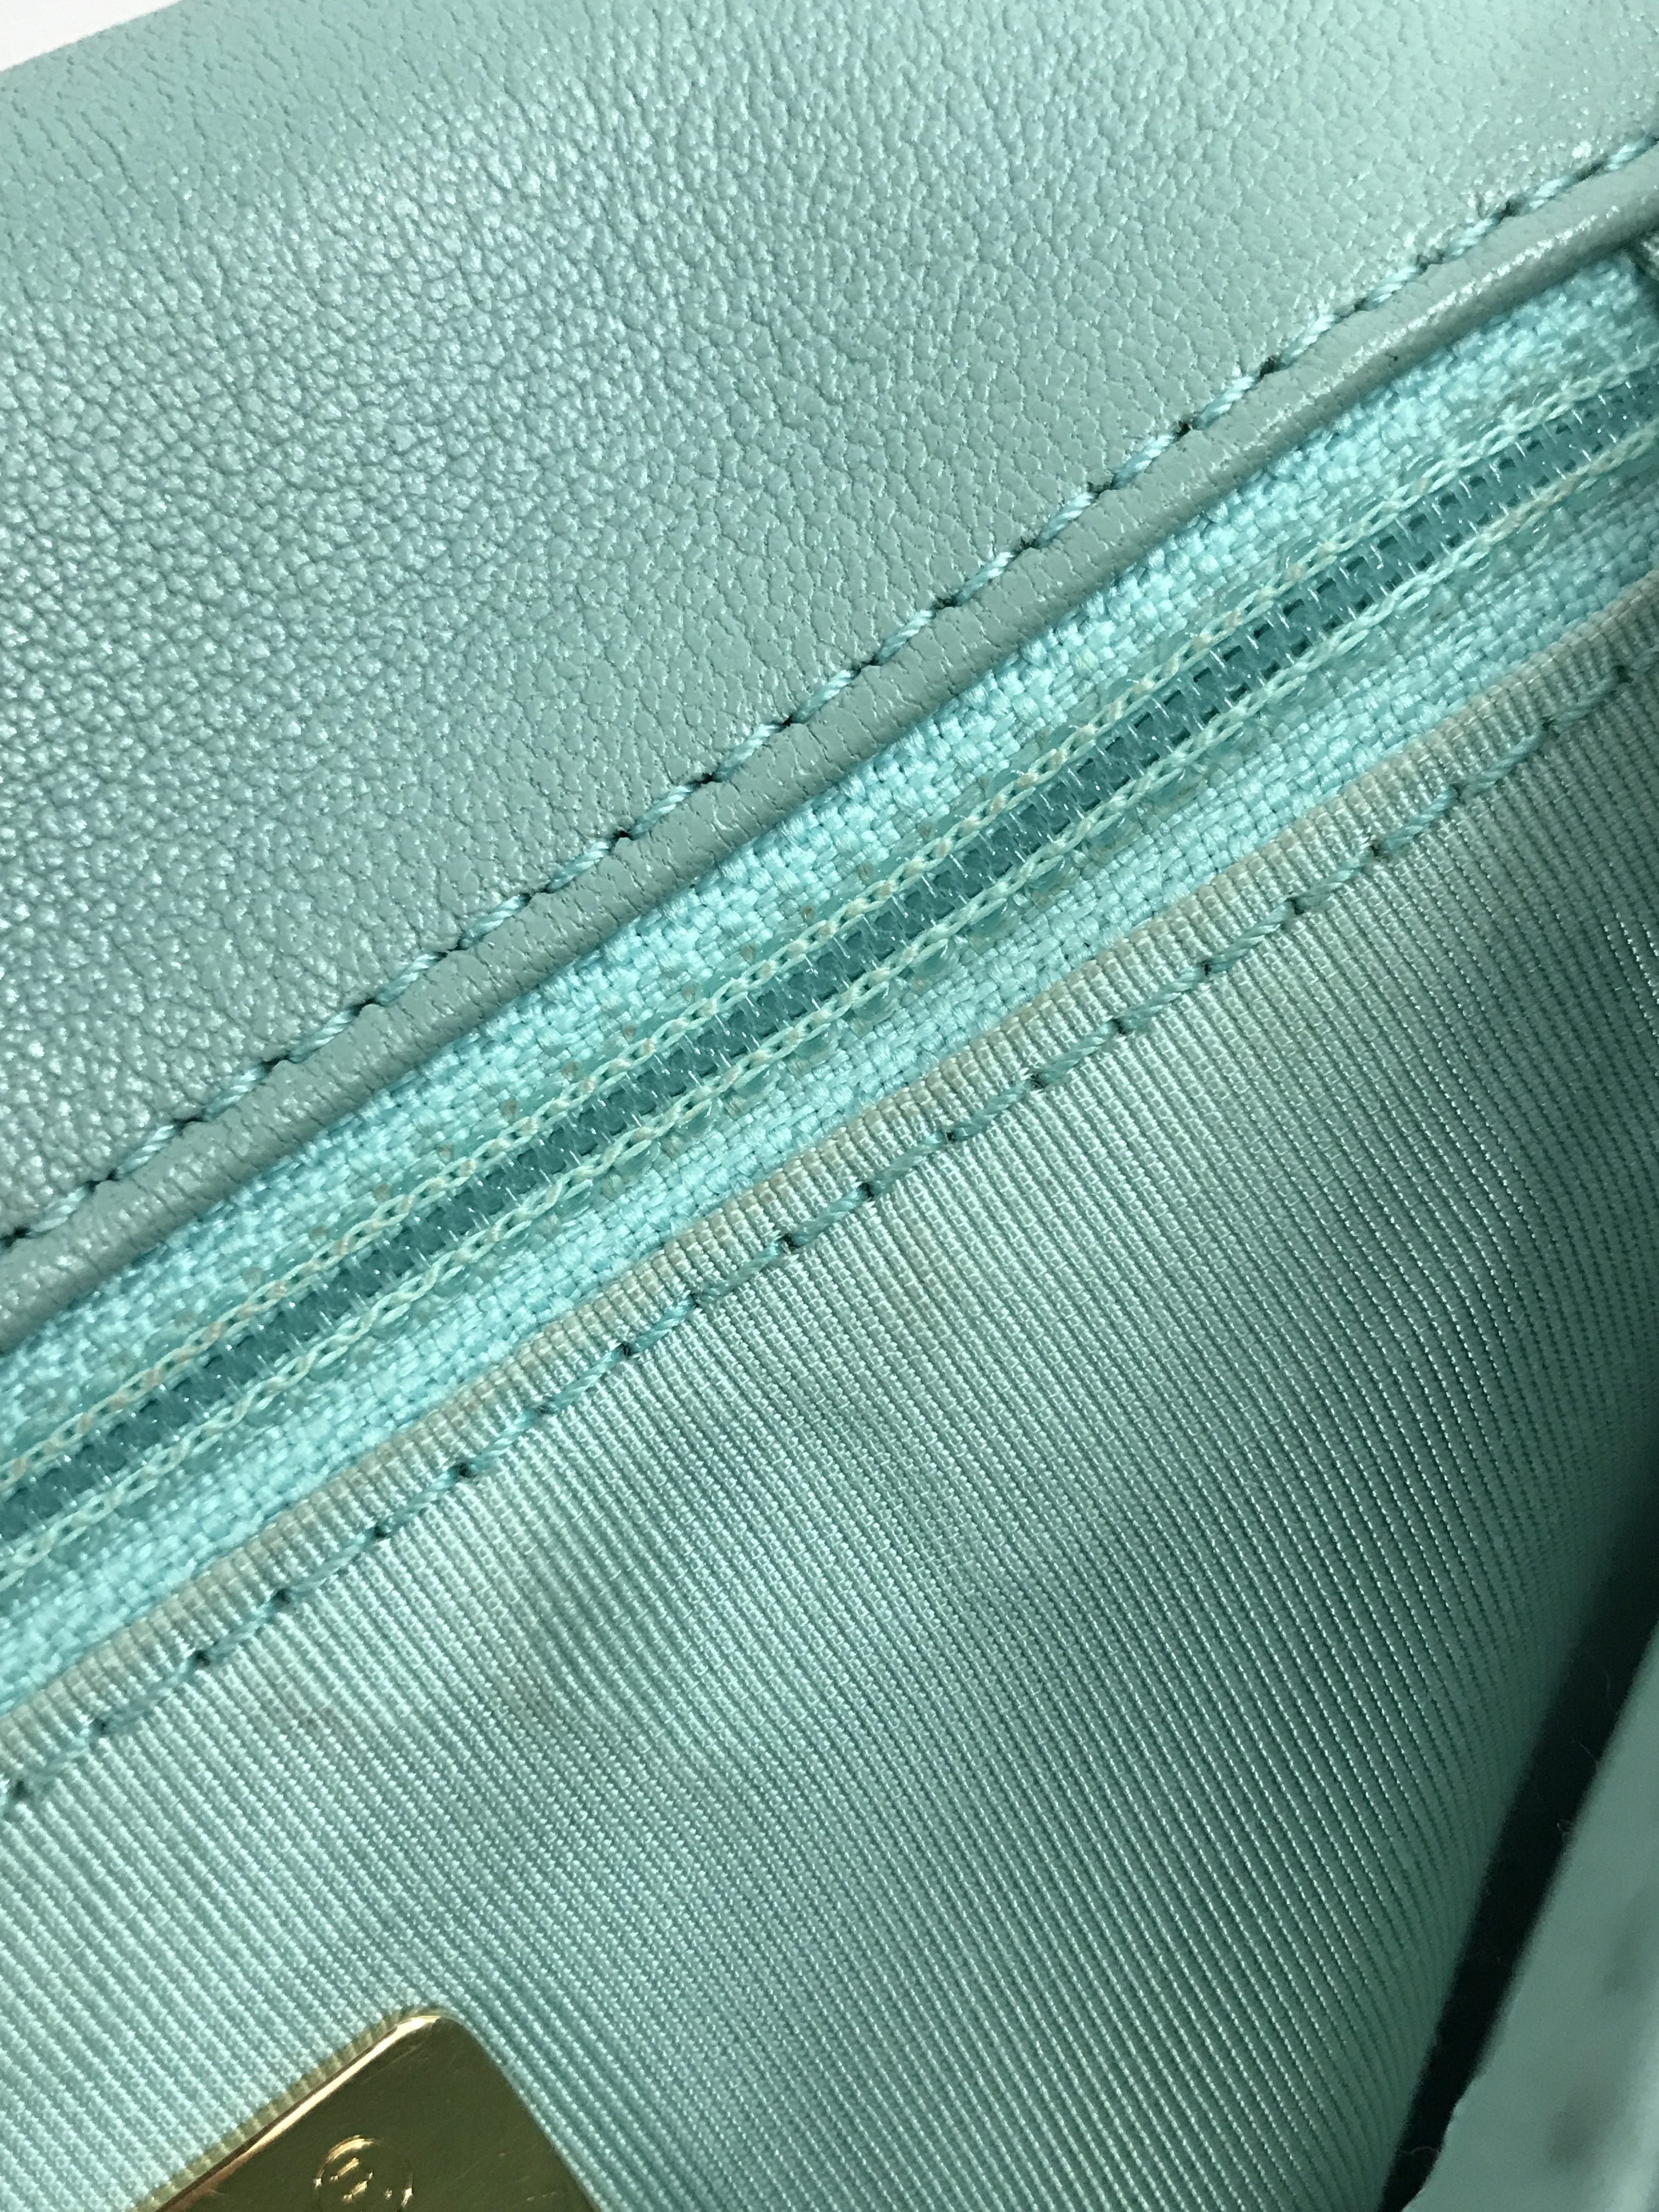 Tiffany Blue Lambskin Small 19 Flap Bag W/SHW/AGHW/RHW